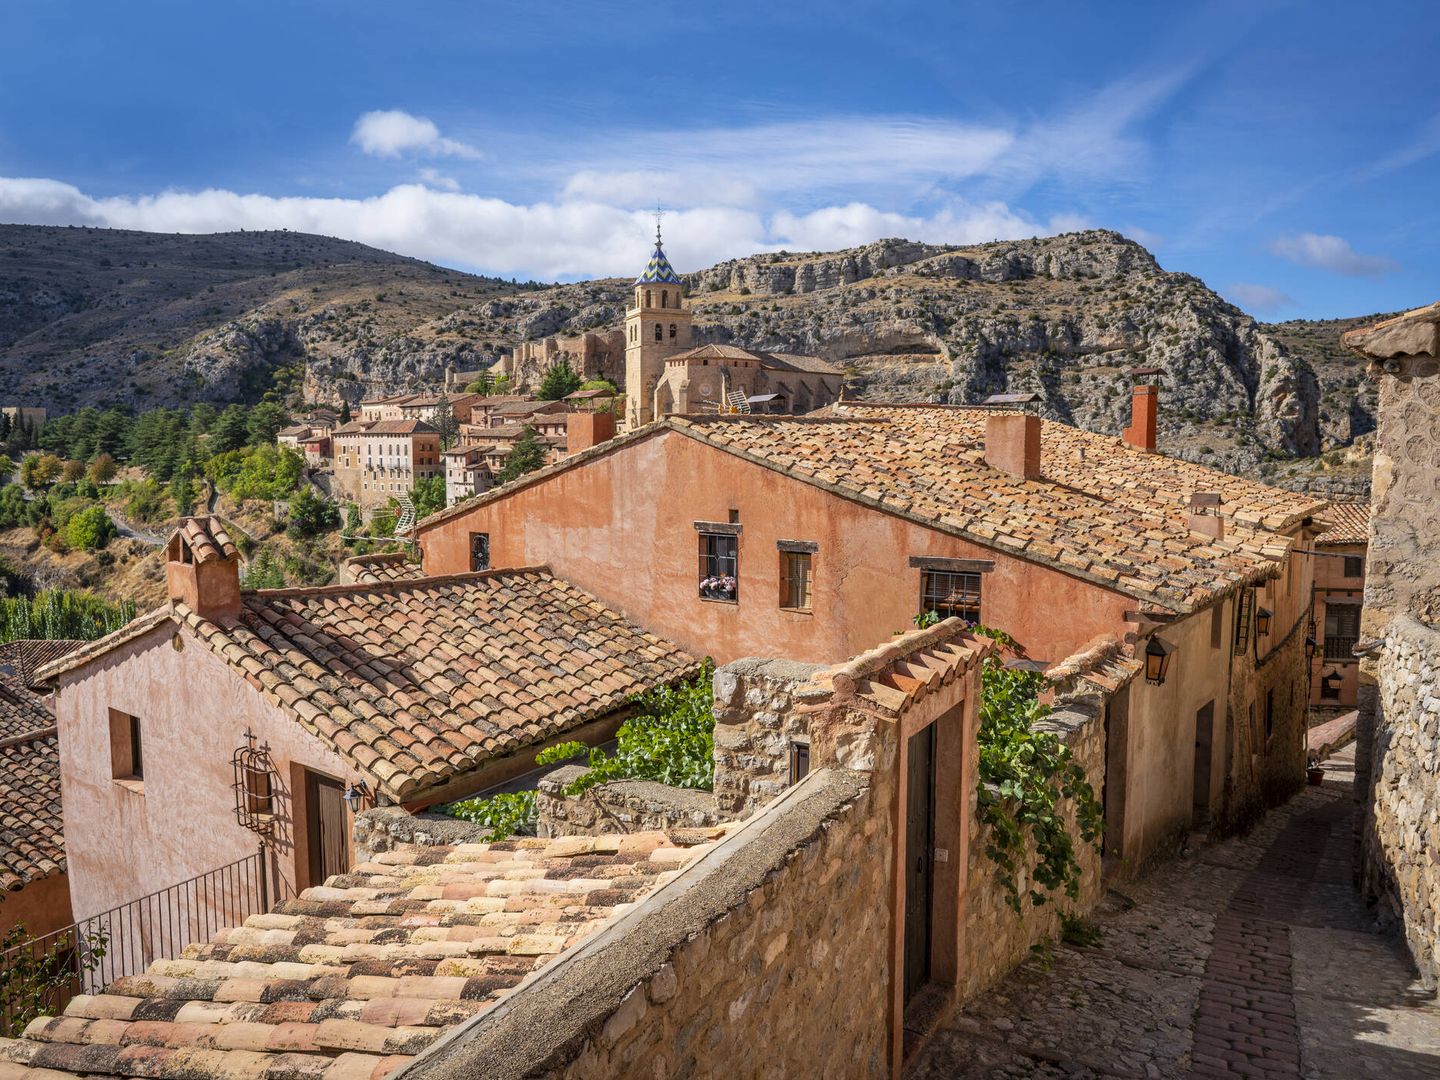 Calles del pueblo de Albarracín en Teruel (Fuente: iStock)